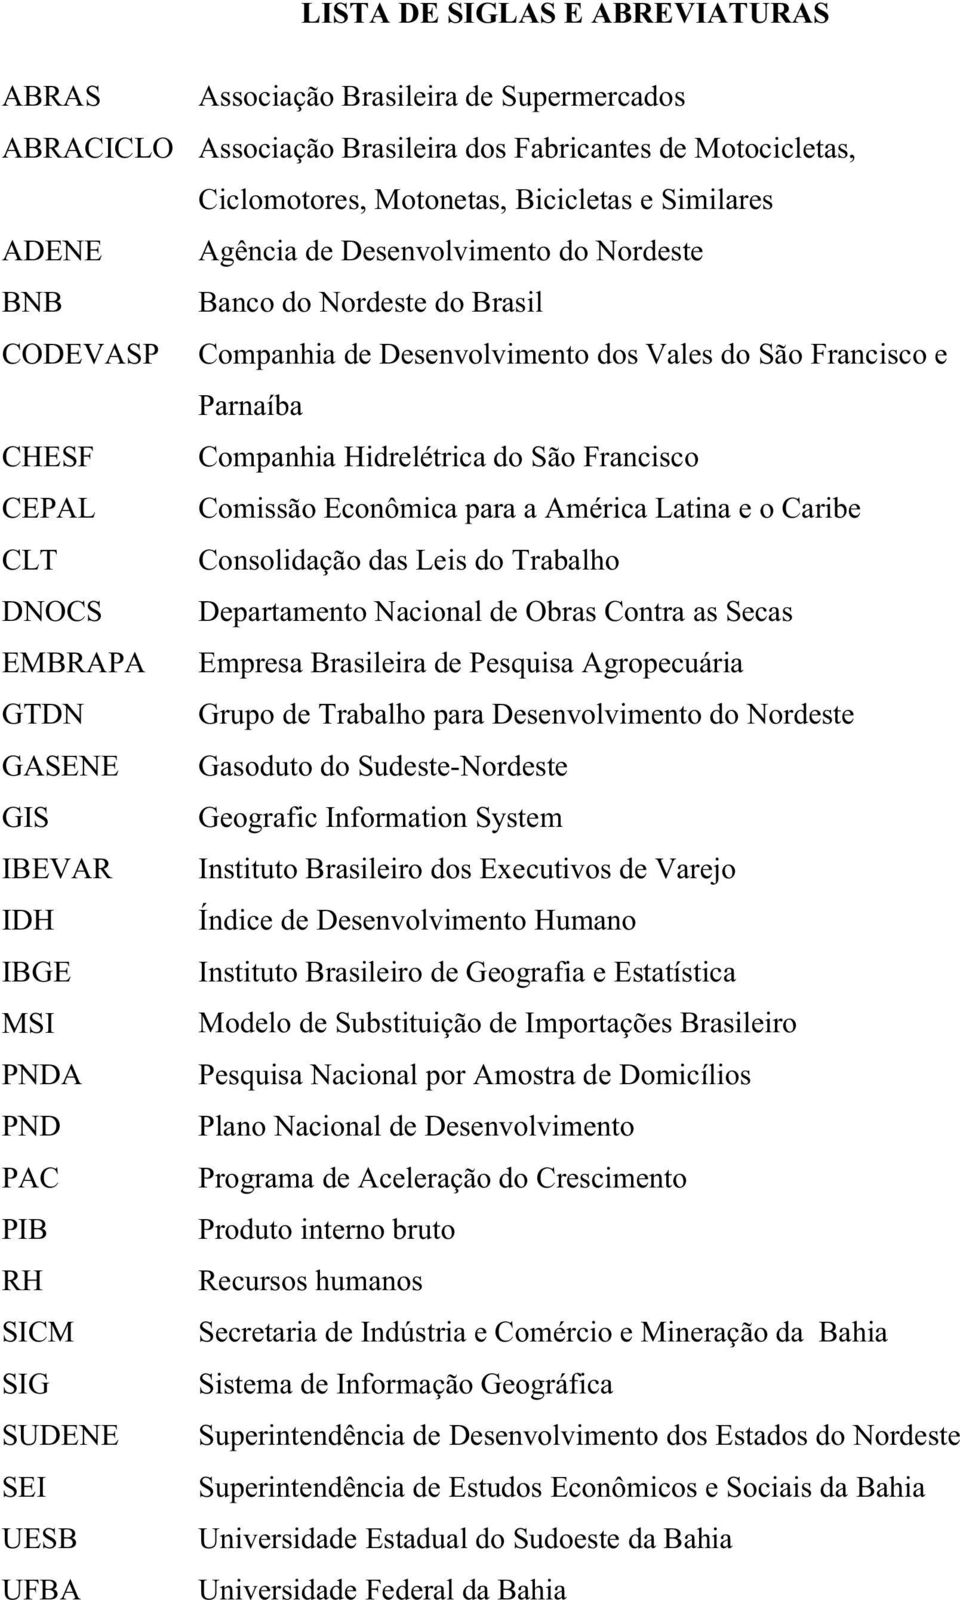 Comissão Econômica para a América Latina e o Caribe CLT Consolidação das Leis do Trabalho DNOCS Departamento Nacional de Obras Contra as Secas EMBRAPA Empresa Brasileira de Pesquisa Agropecuária GTDN